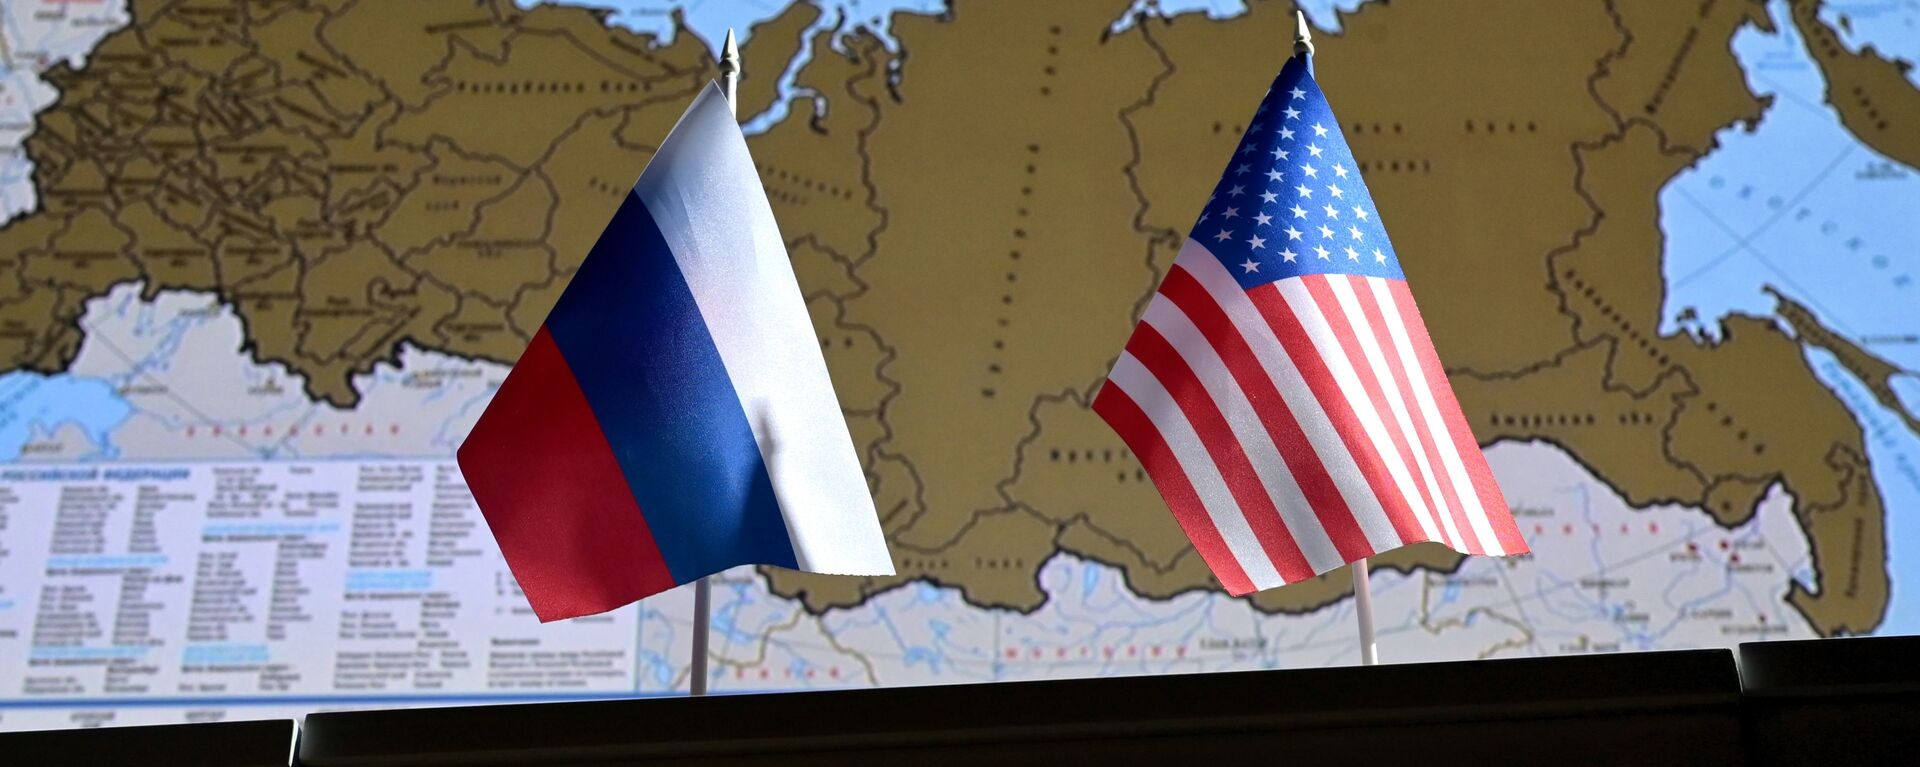 Государственные флаги России и США. - Sputnik Абхазия, 1920, 22.04.2022